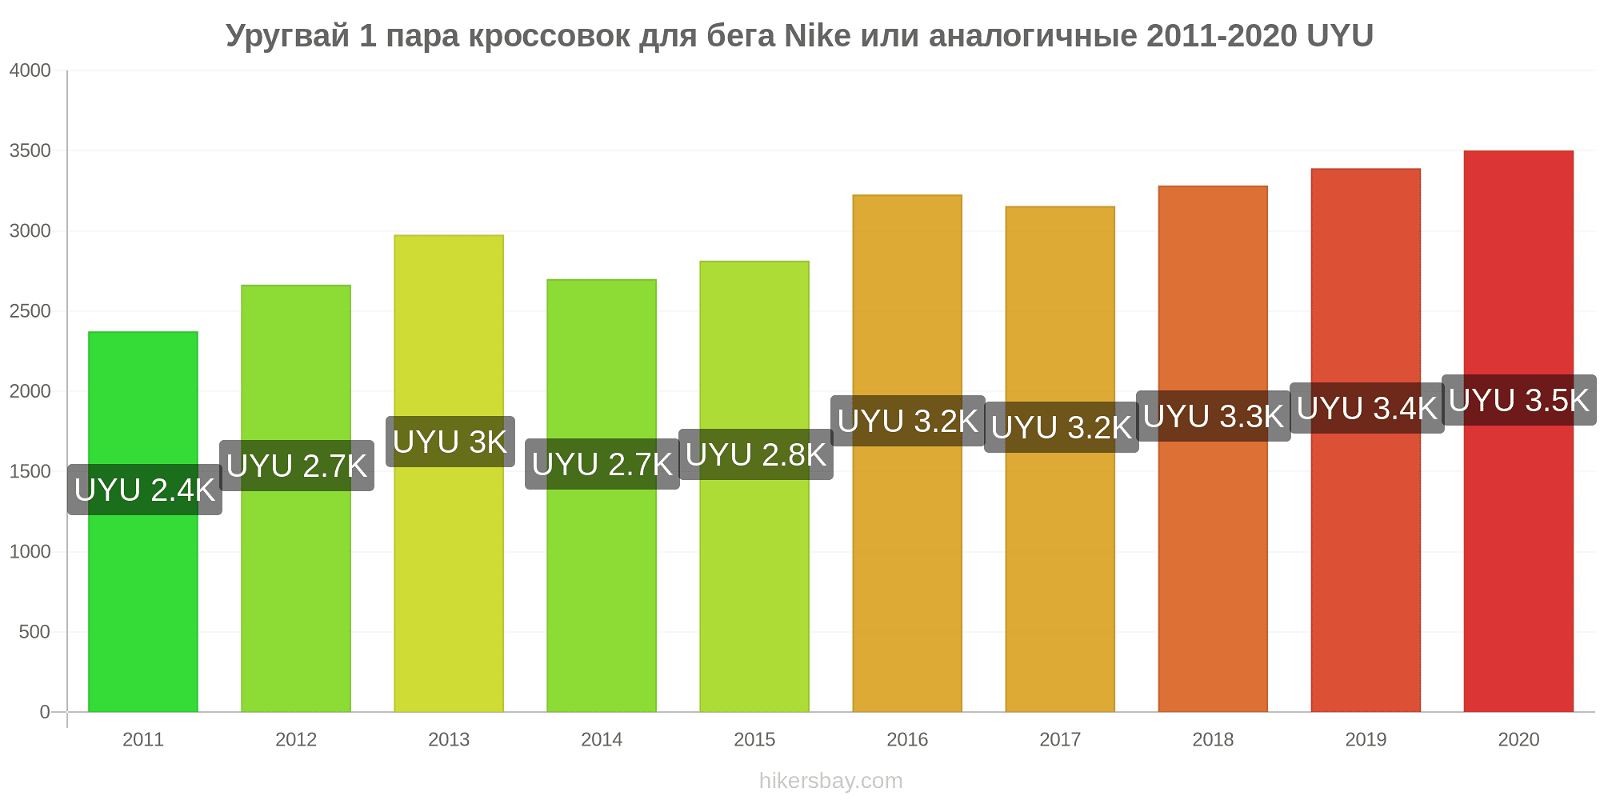 Уругвай изменения цен 1 пара кроссовок для бега Nike или аналогичные hikersbay.com